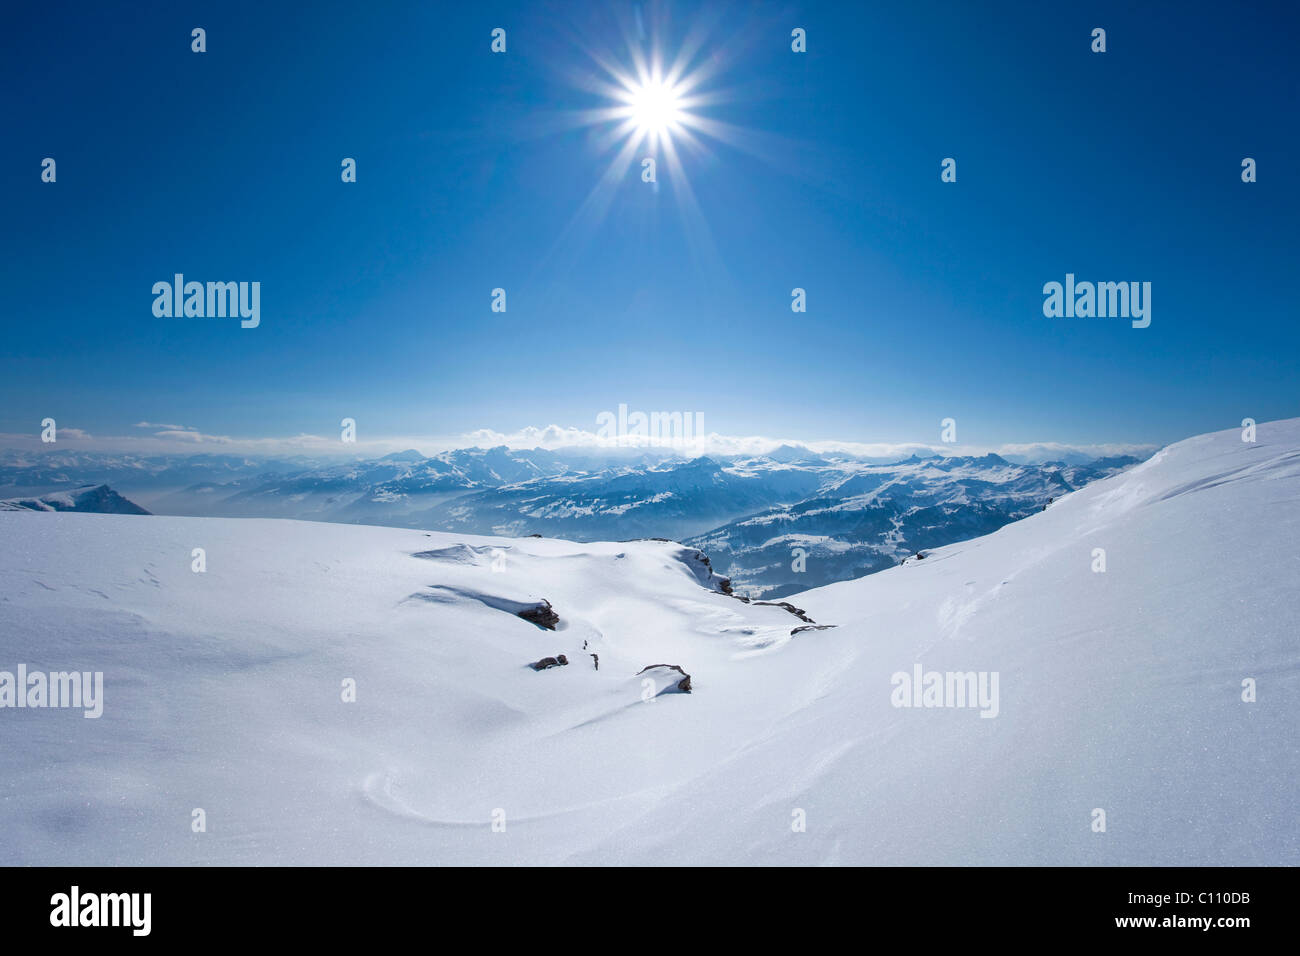 View from Chaeserrugg towards the winter sun, Switzerland, Europe Stock Photo